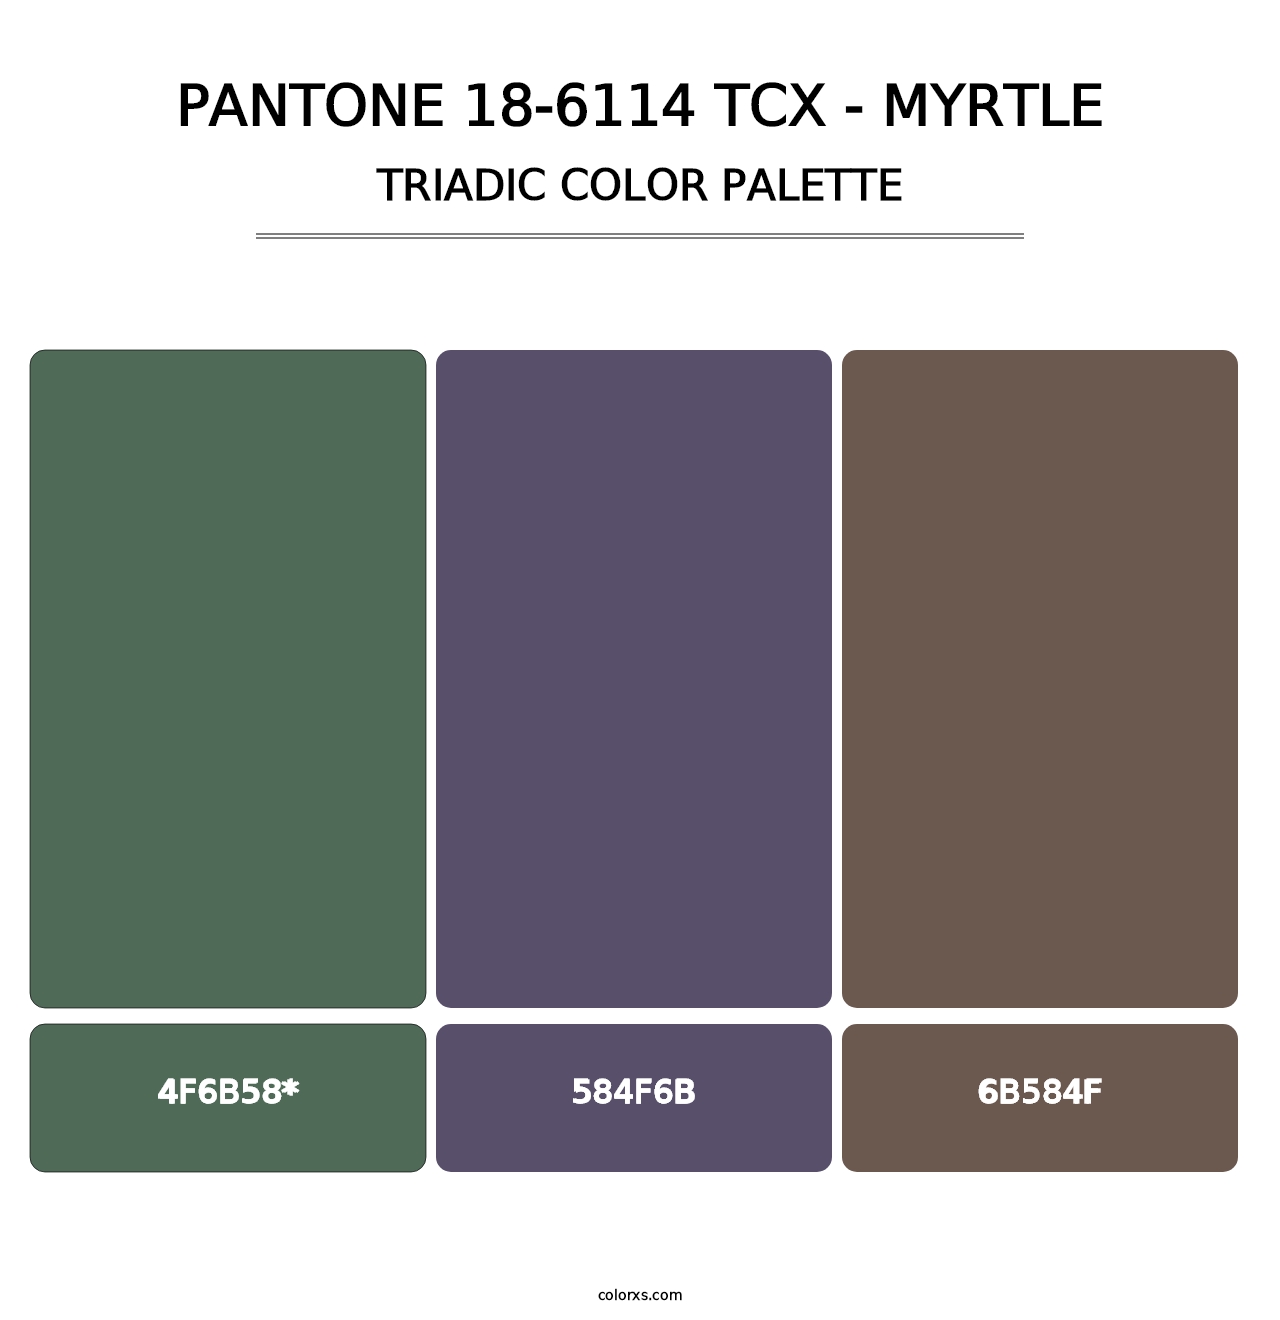 PANTONE 18-6114 TCX - Myrtle - Triadic Color Palette